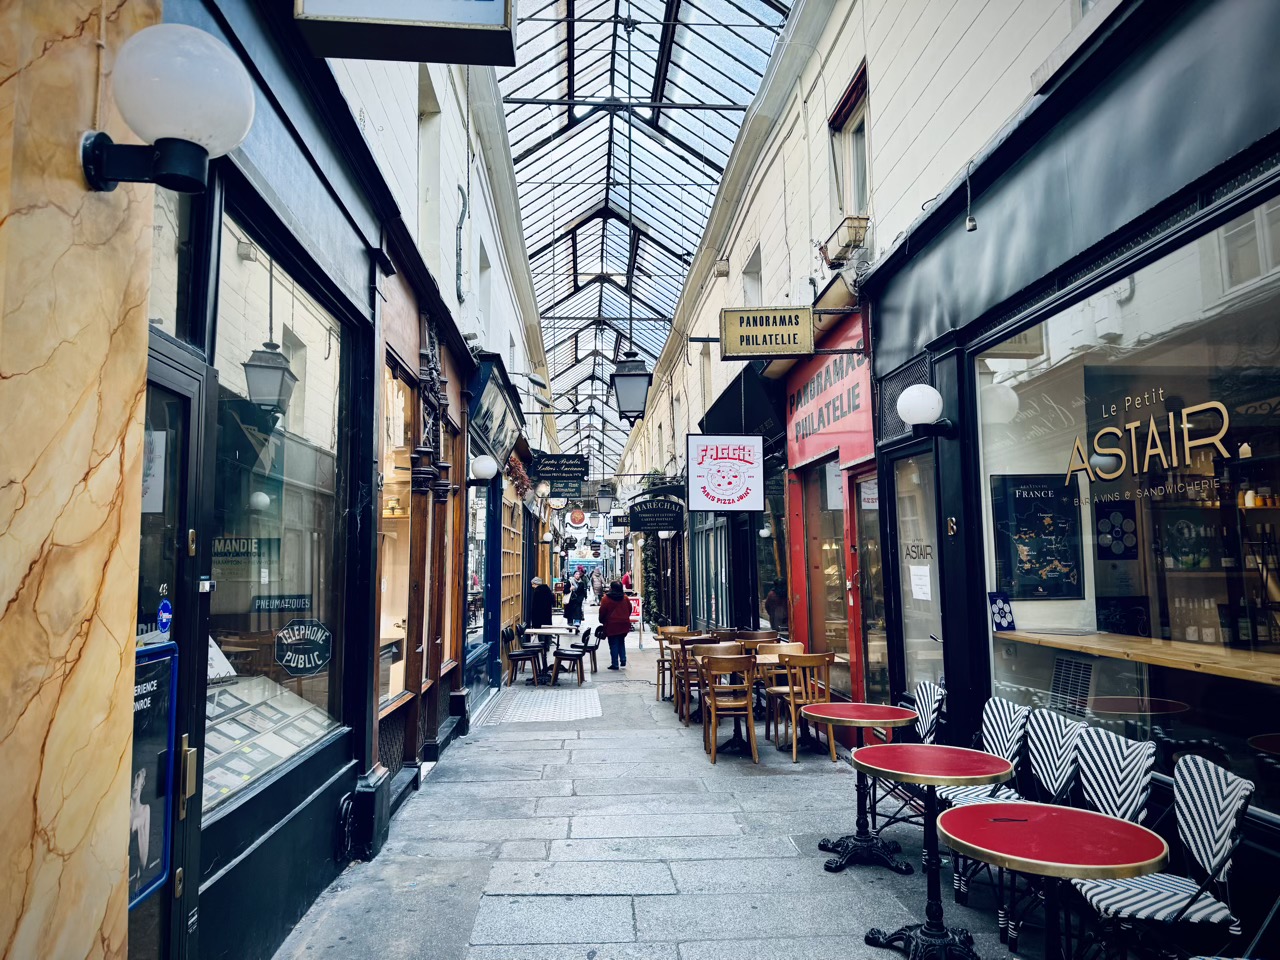 Passages couverts de Paris (a “covered passage”)